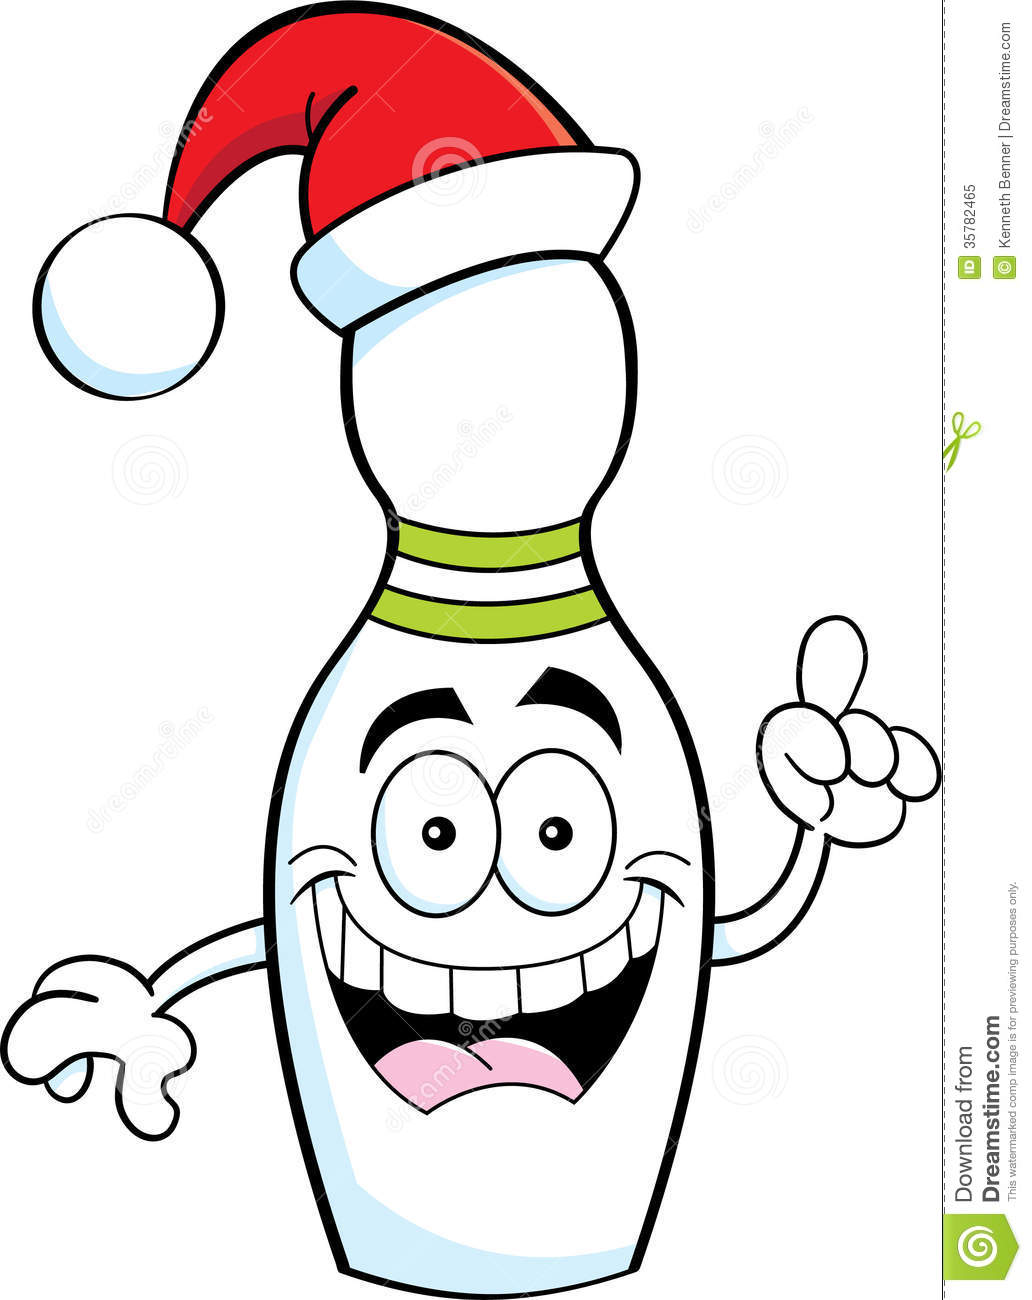 Cartoon Bowling Pin Wearing A Santa Hat Royalty Free Stock Photo